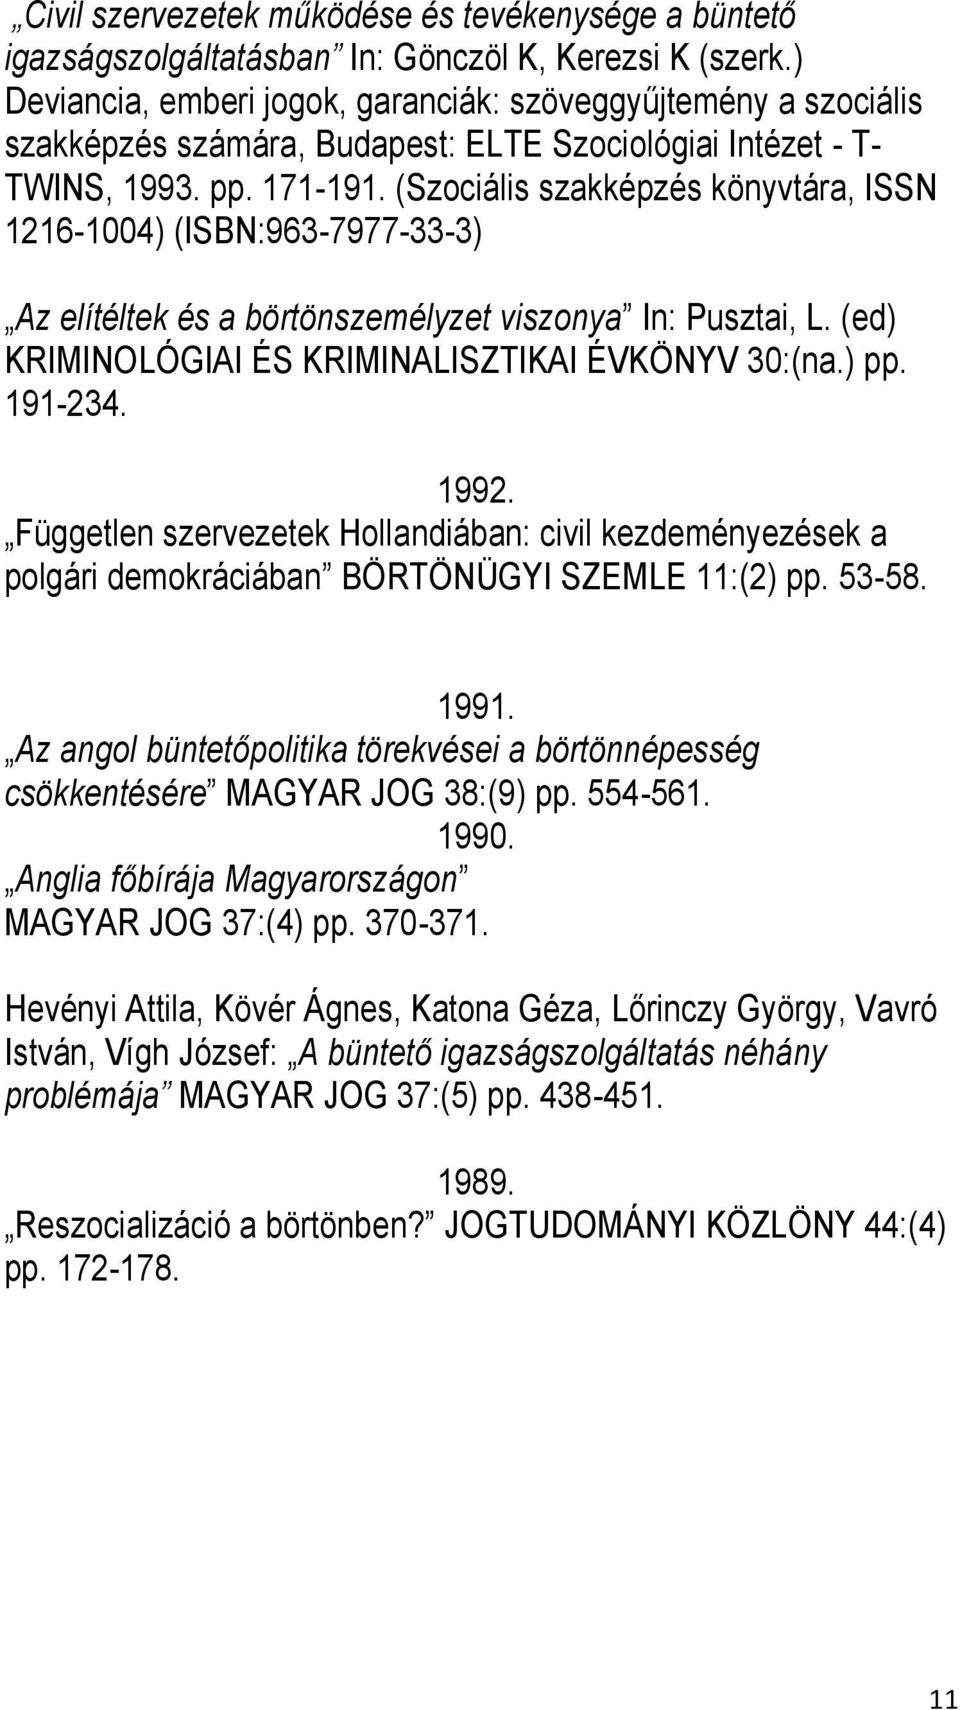 (Szociális szakképzés könyvtára, ISSN 1216-1004) (ISBN:963-7977-33-3) Az elítéltek és a börtönszemélyzet viszonya In: Pusztai, L. (ed) KRIMINOLÓGIAI ÉS KRIMINALISZTIKAI ÉVKÖNYV 30:(na.) pp. 191-234.